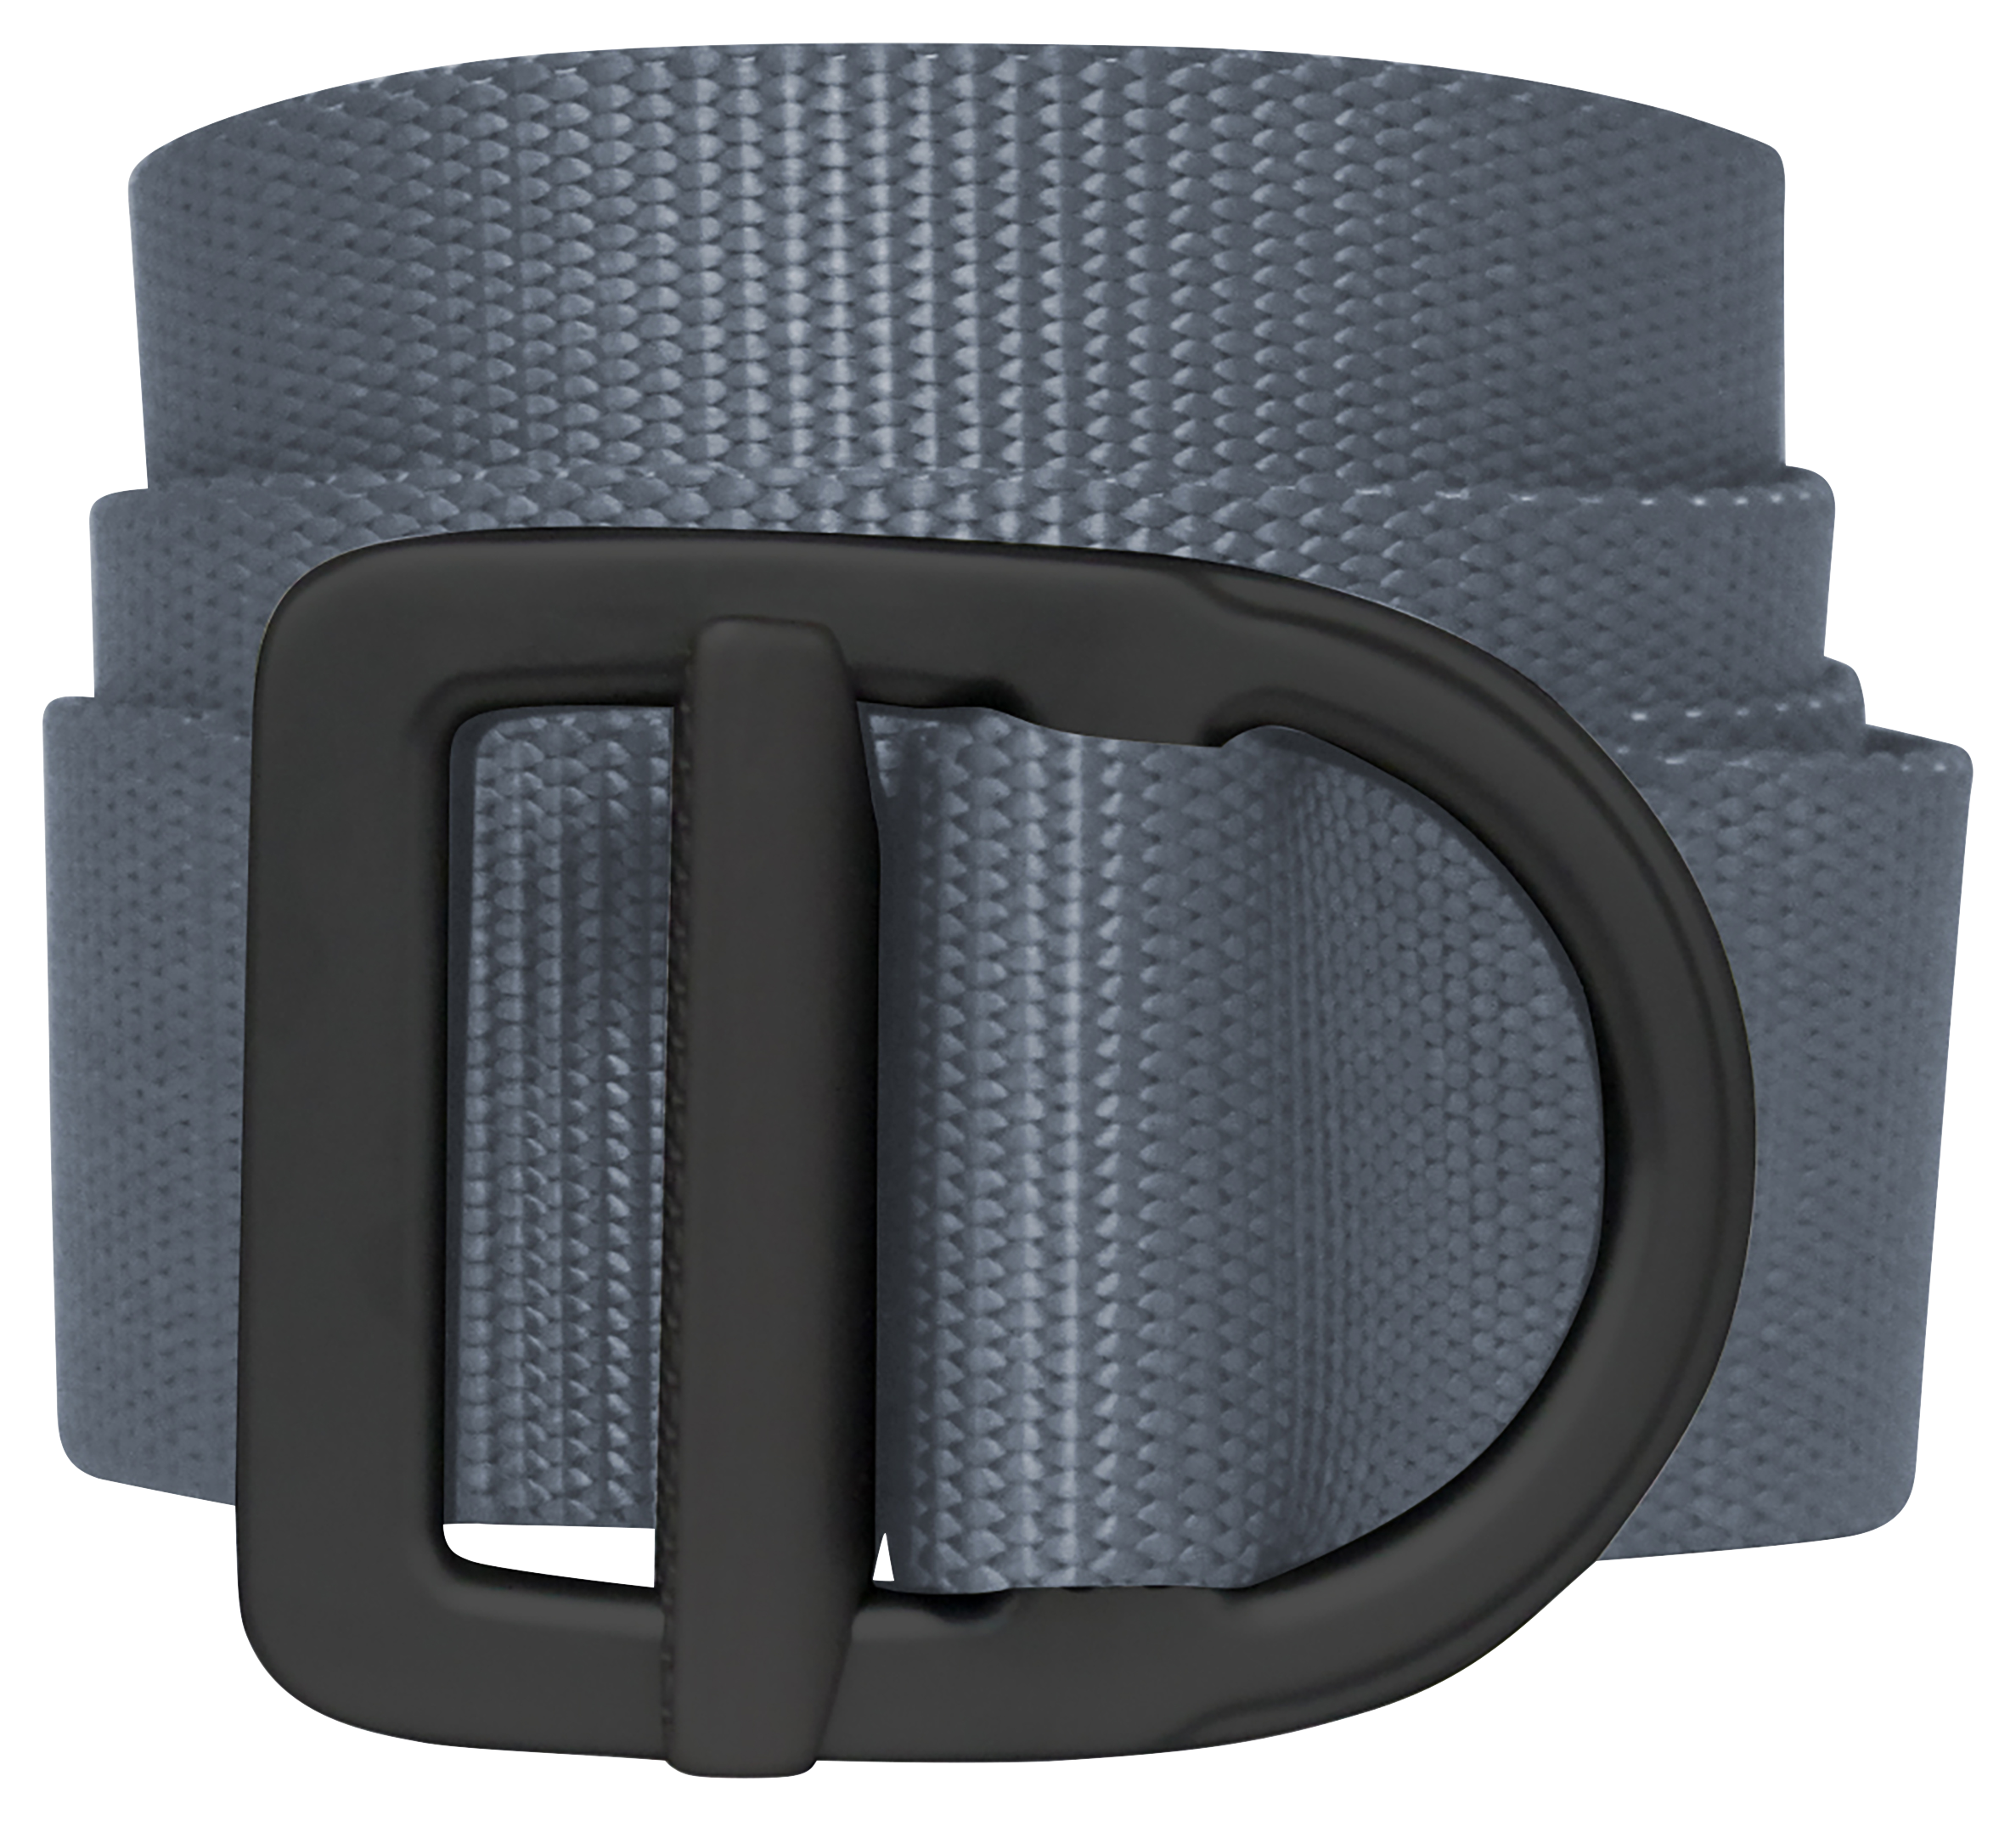 Bison Designs Last Chance Delta Light-Duty Belt for Men - Grey/Black - M